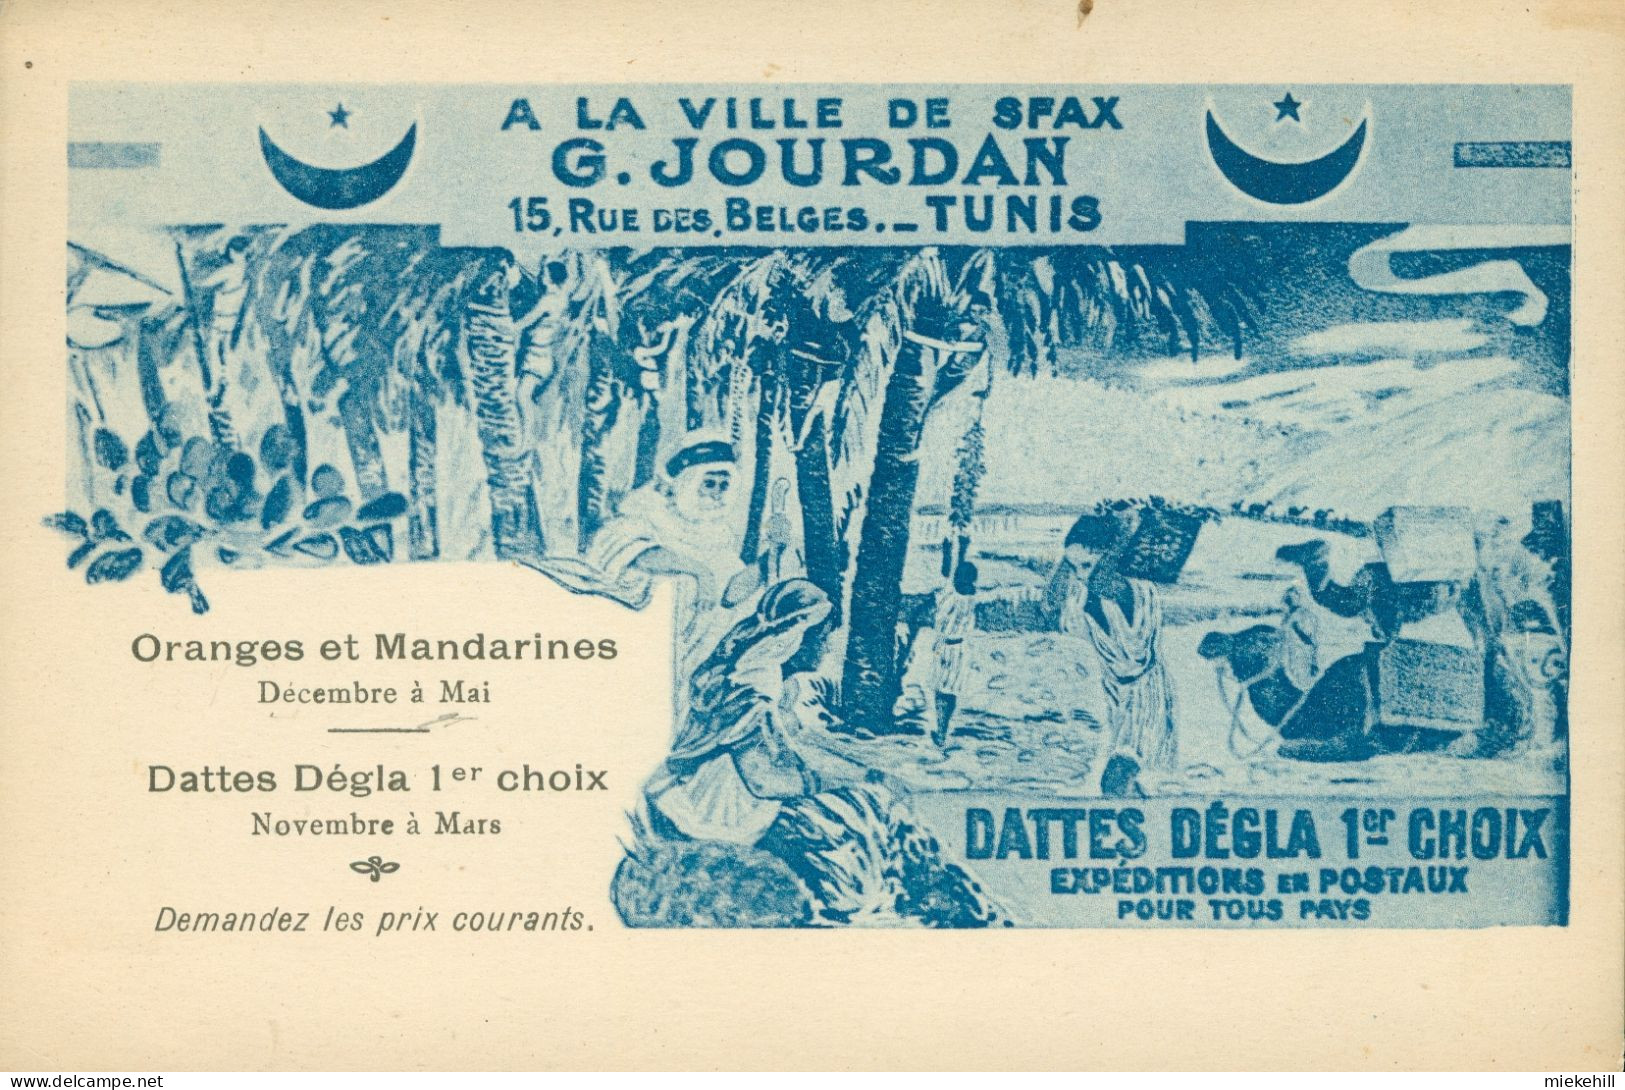 TUNIS-A LA VILLE DE SFAX-G.JOURDAN-ORANGES ET MANDARINES-DATTES DEGLA - Tunisie